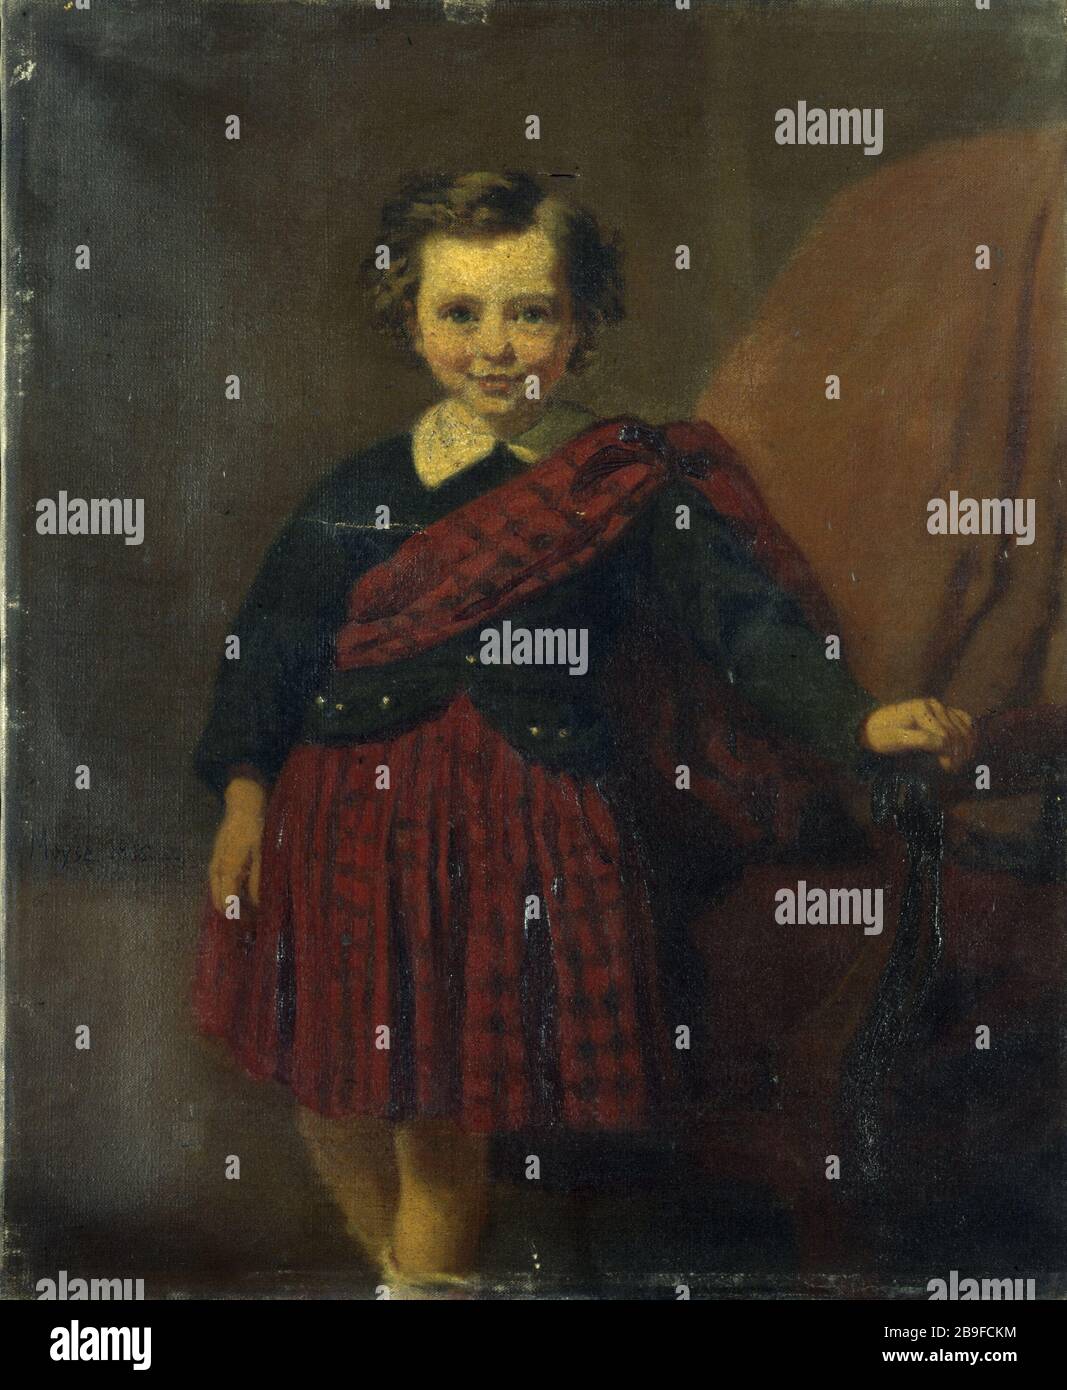 RITRATTO DI RAGAZZINO IN COSTUME SCOZZESE EDOUARD MOYSE. 'Portrait de petit garçon (Maurice Coblence, né it 1861), en costume écossais', 1866. Huile sur toile. Parigi, musée Carnavalet. Foto Stock